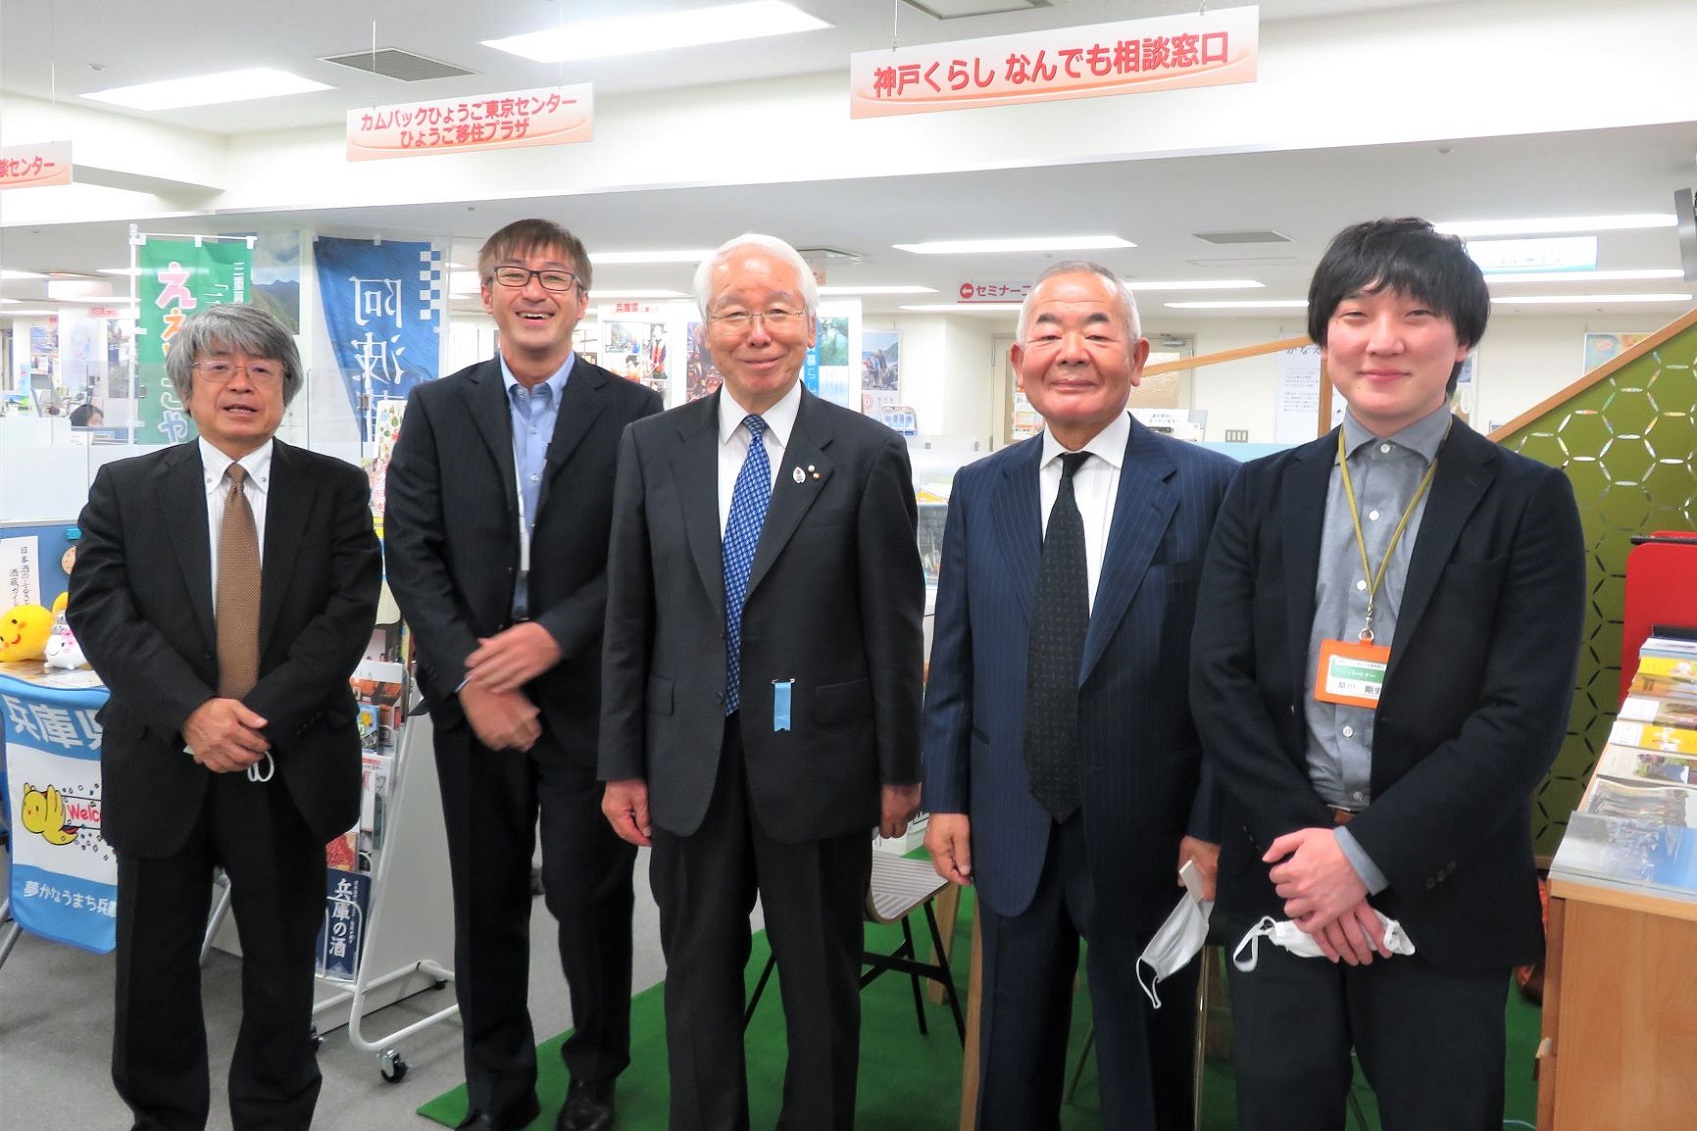 兵庫県・井戸知事が来訪されました | 地域のトピックス